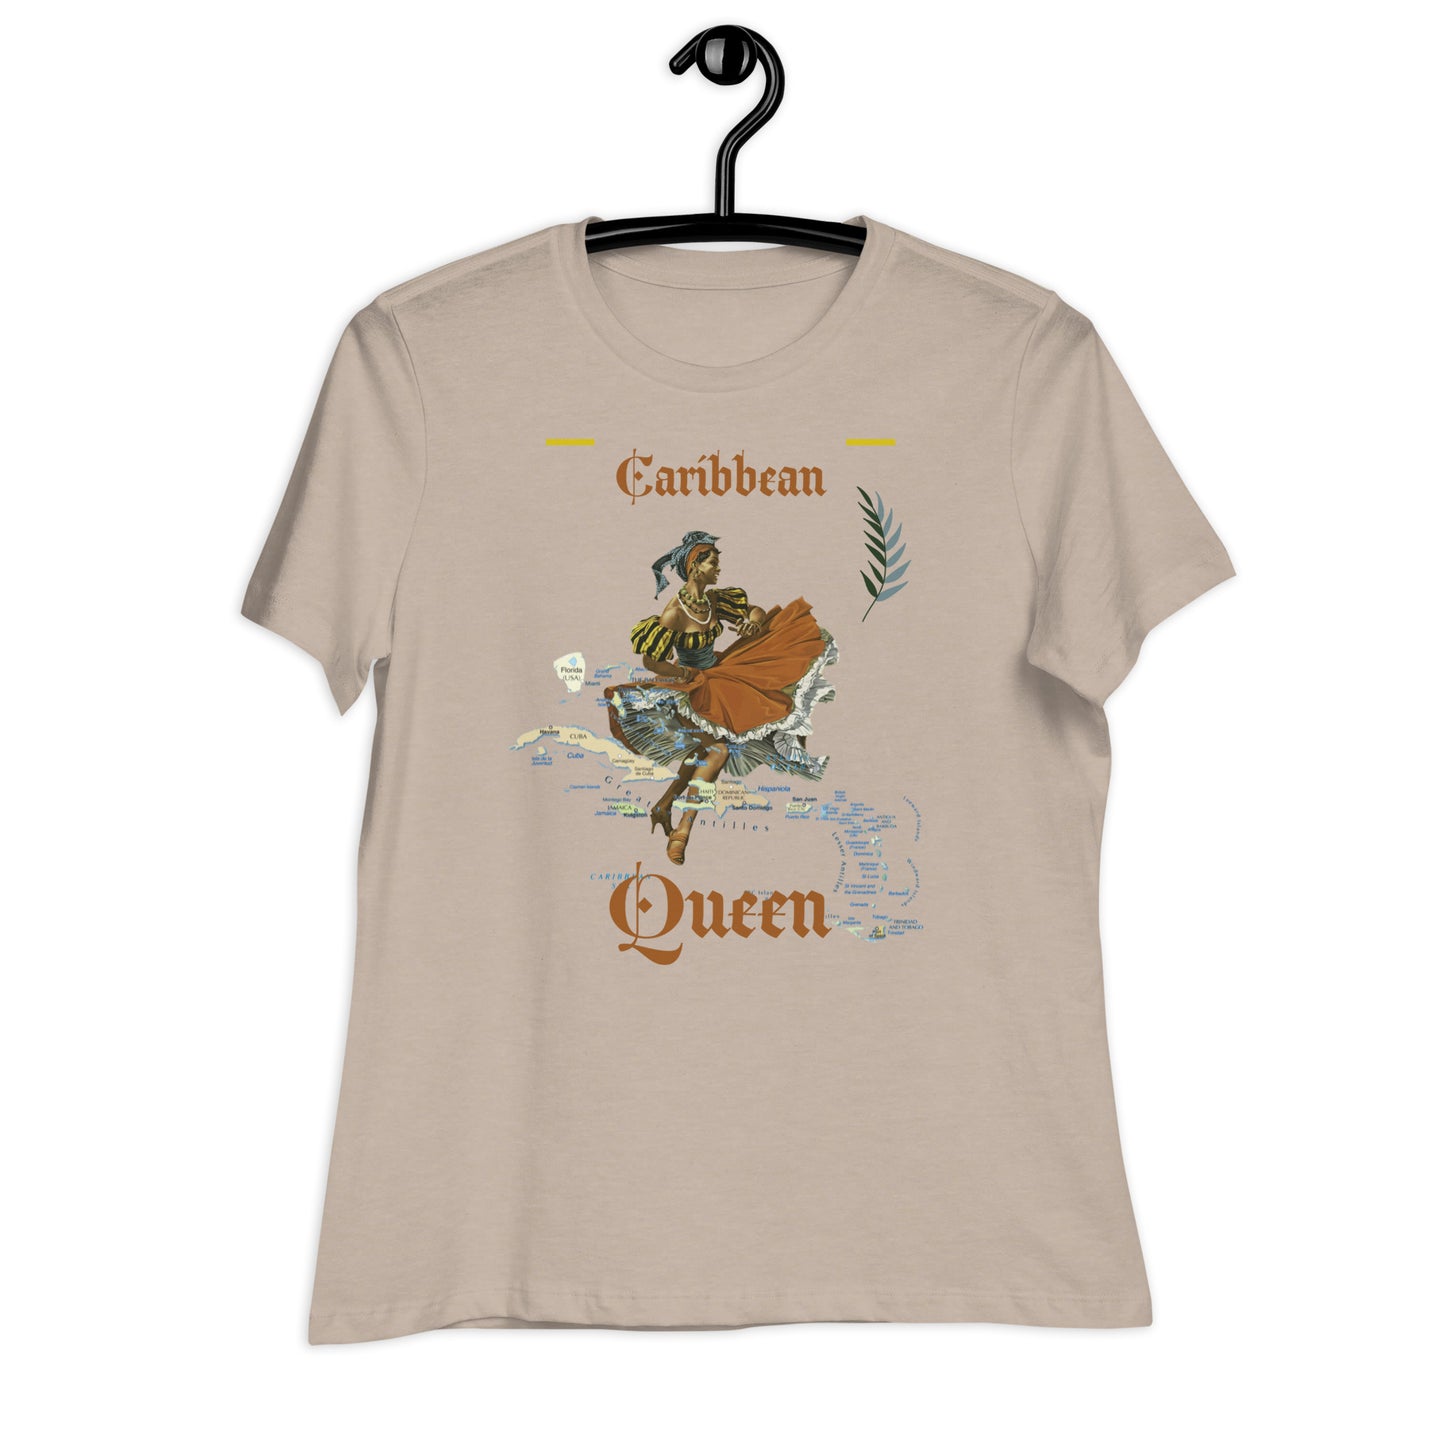 Caribbean Queen Women's Relaxed T-Shirt